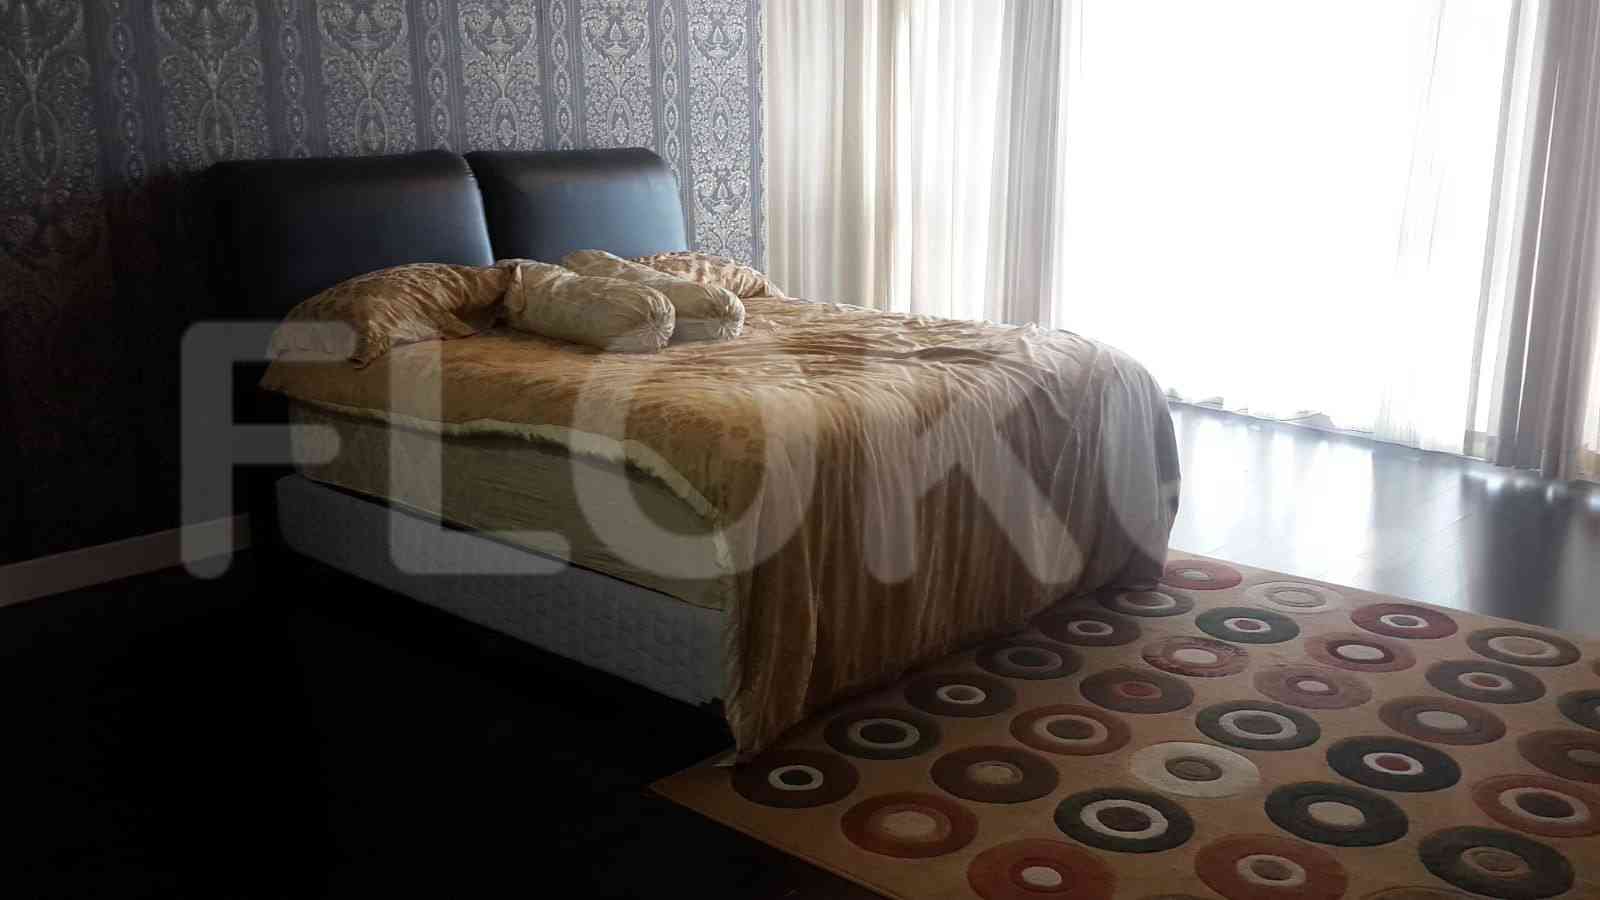 4 Bedroom on 18th Floor for Rent in Regatta - fplf24 1